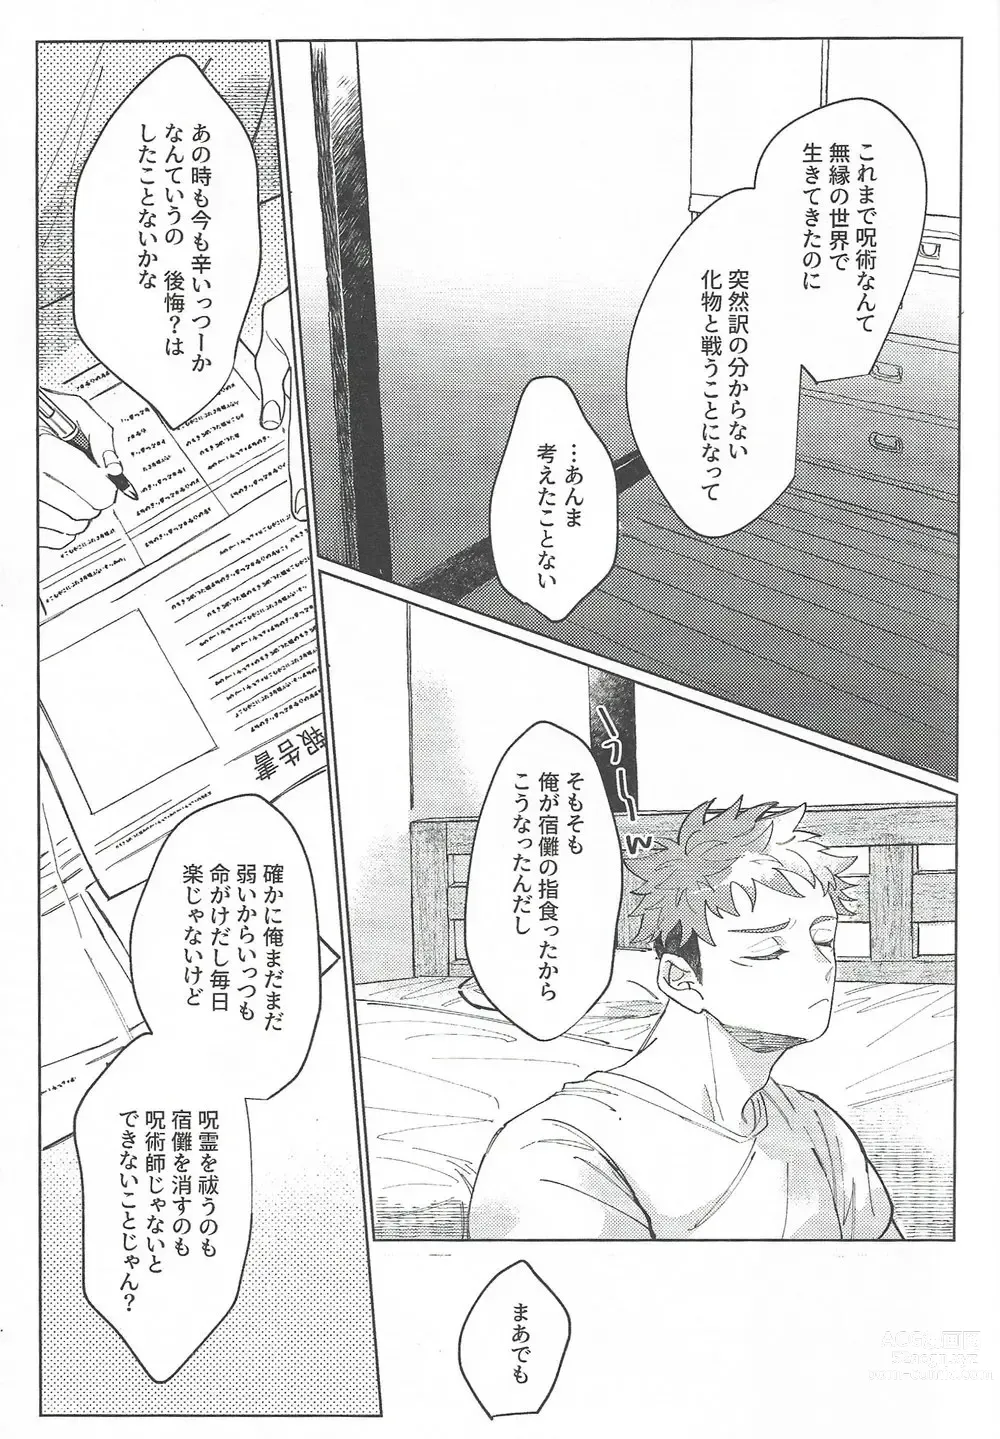 Page 48 of doujinshi Rakuen no Niwa